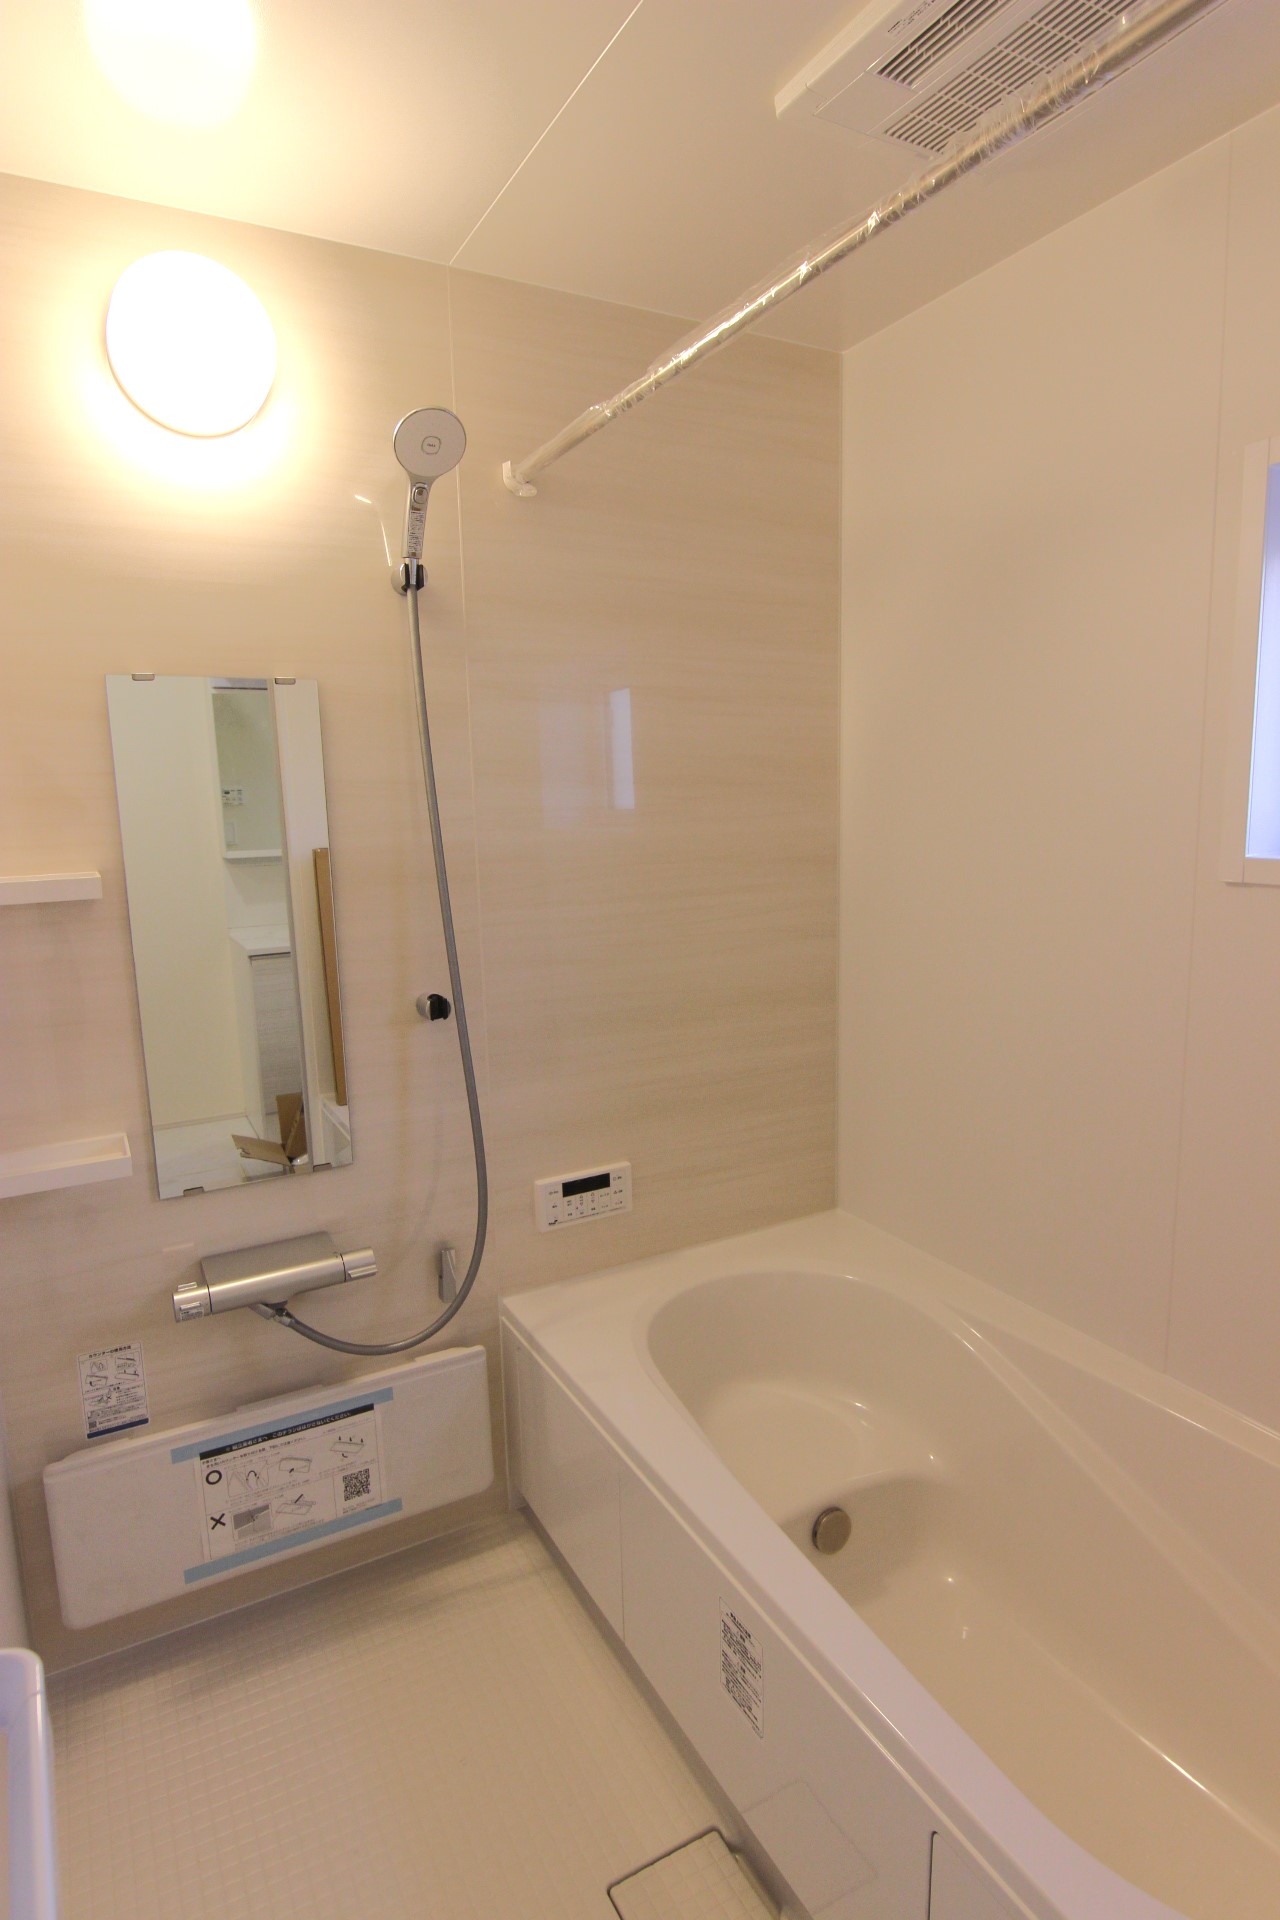 【6号棟:浴室】　白を基調とした、優しく淡い木目調の指し色がおしゃれな、明るい浴室。カウンターは取り外しできお手入れ簡単!　※浴室の仕様は全棟共通です。